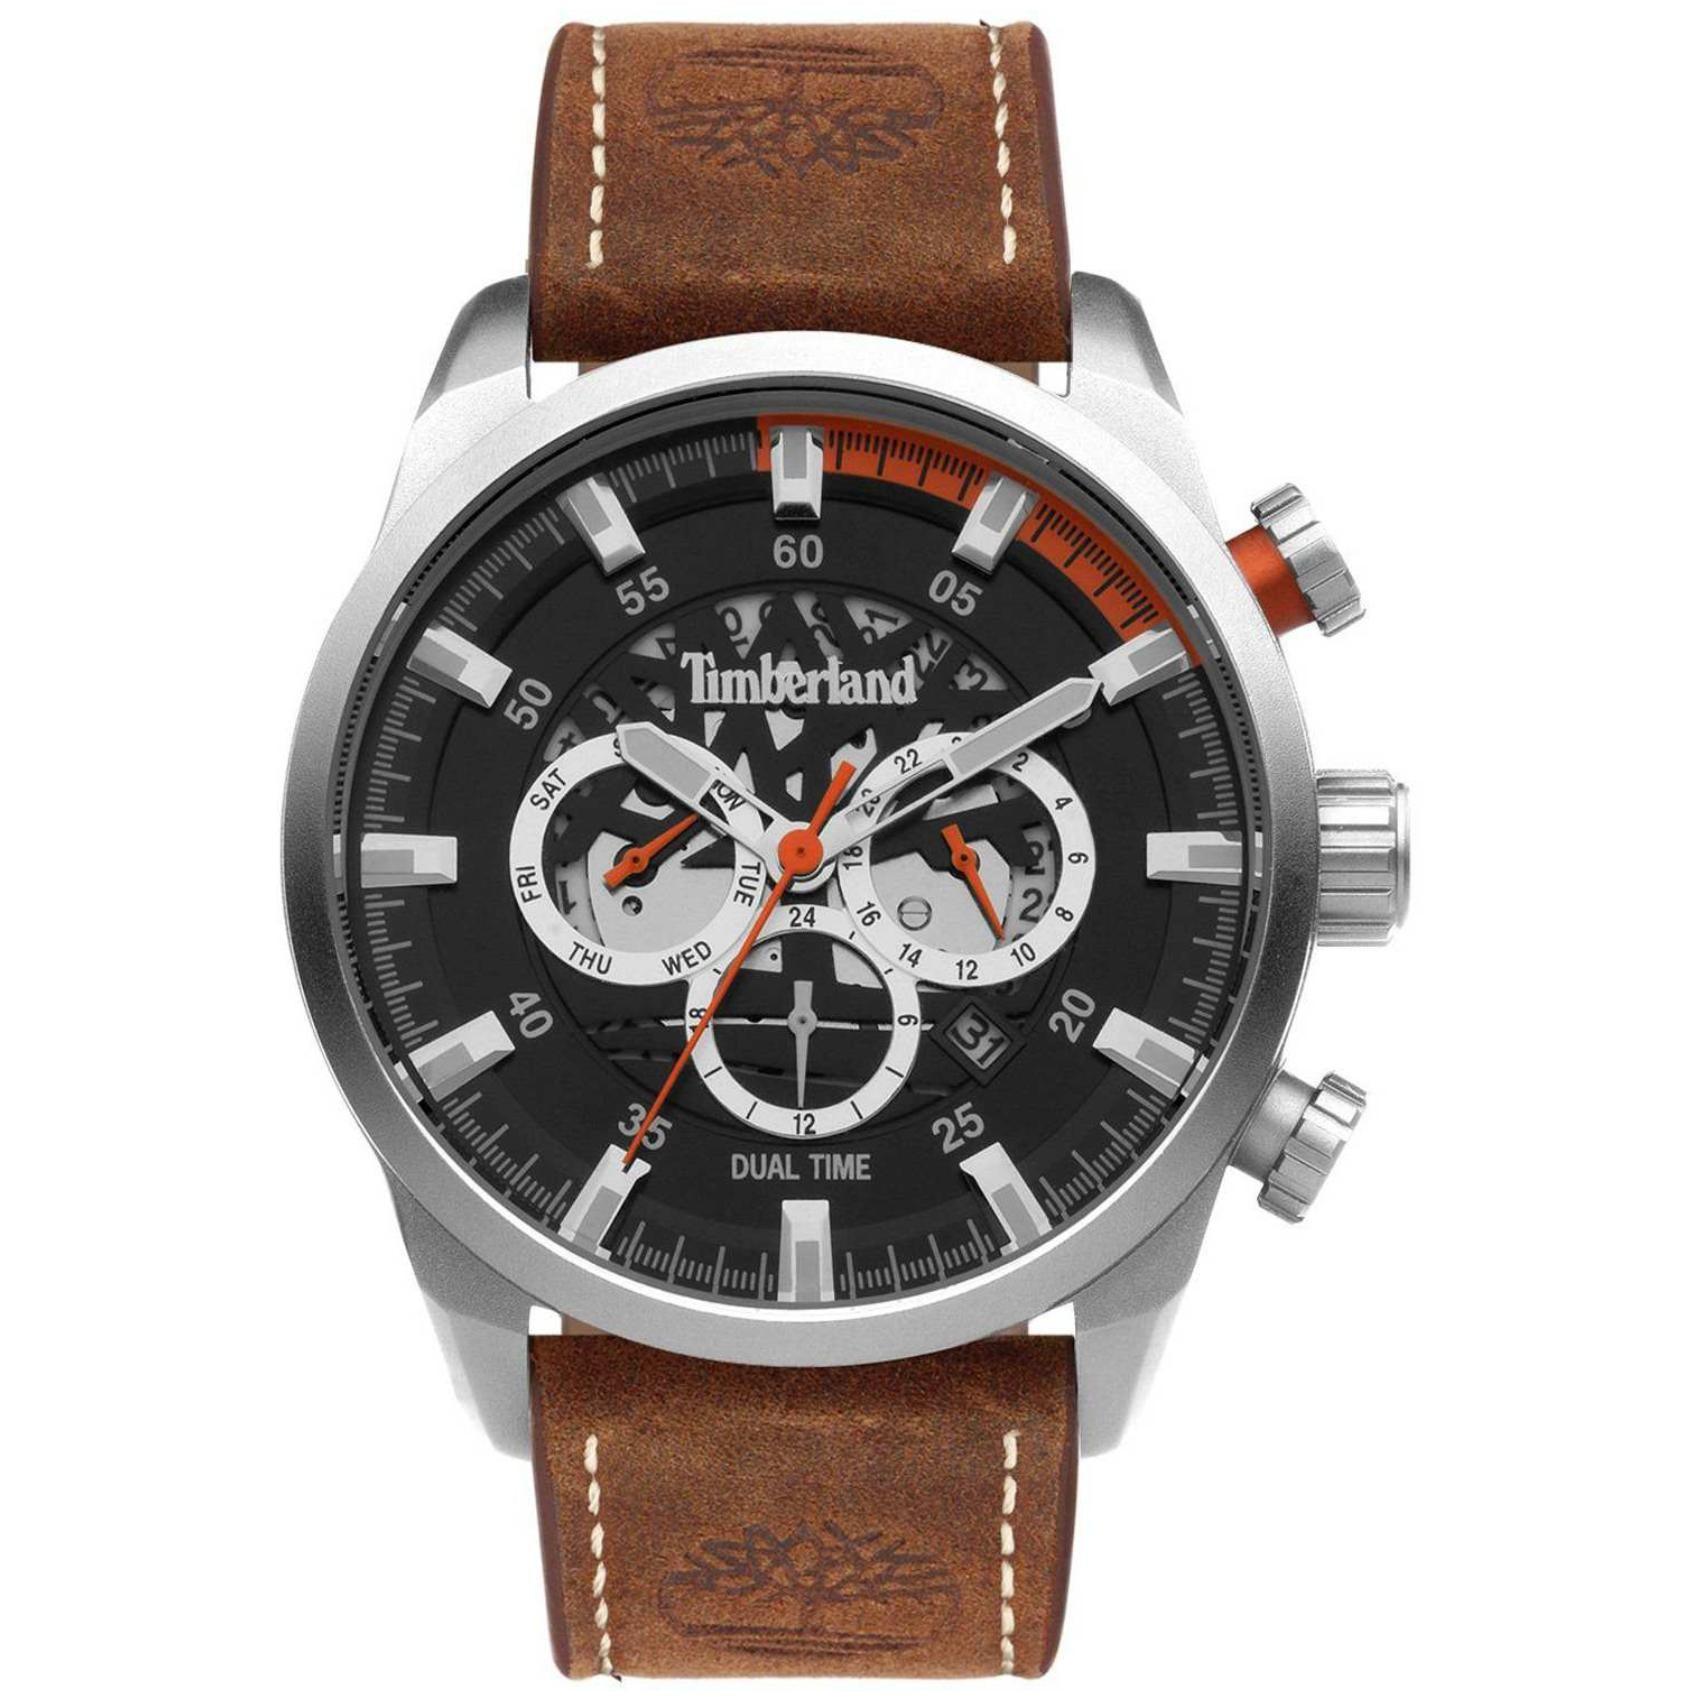 Αντρικό ρολόι Timberland Henniker III TDWGF2100603 Dual Time με καφέ δερμάτινο λουράκι και μαύρο καντράν διαμέτρου 46mm με ημέρα-ημερομηνία.